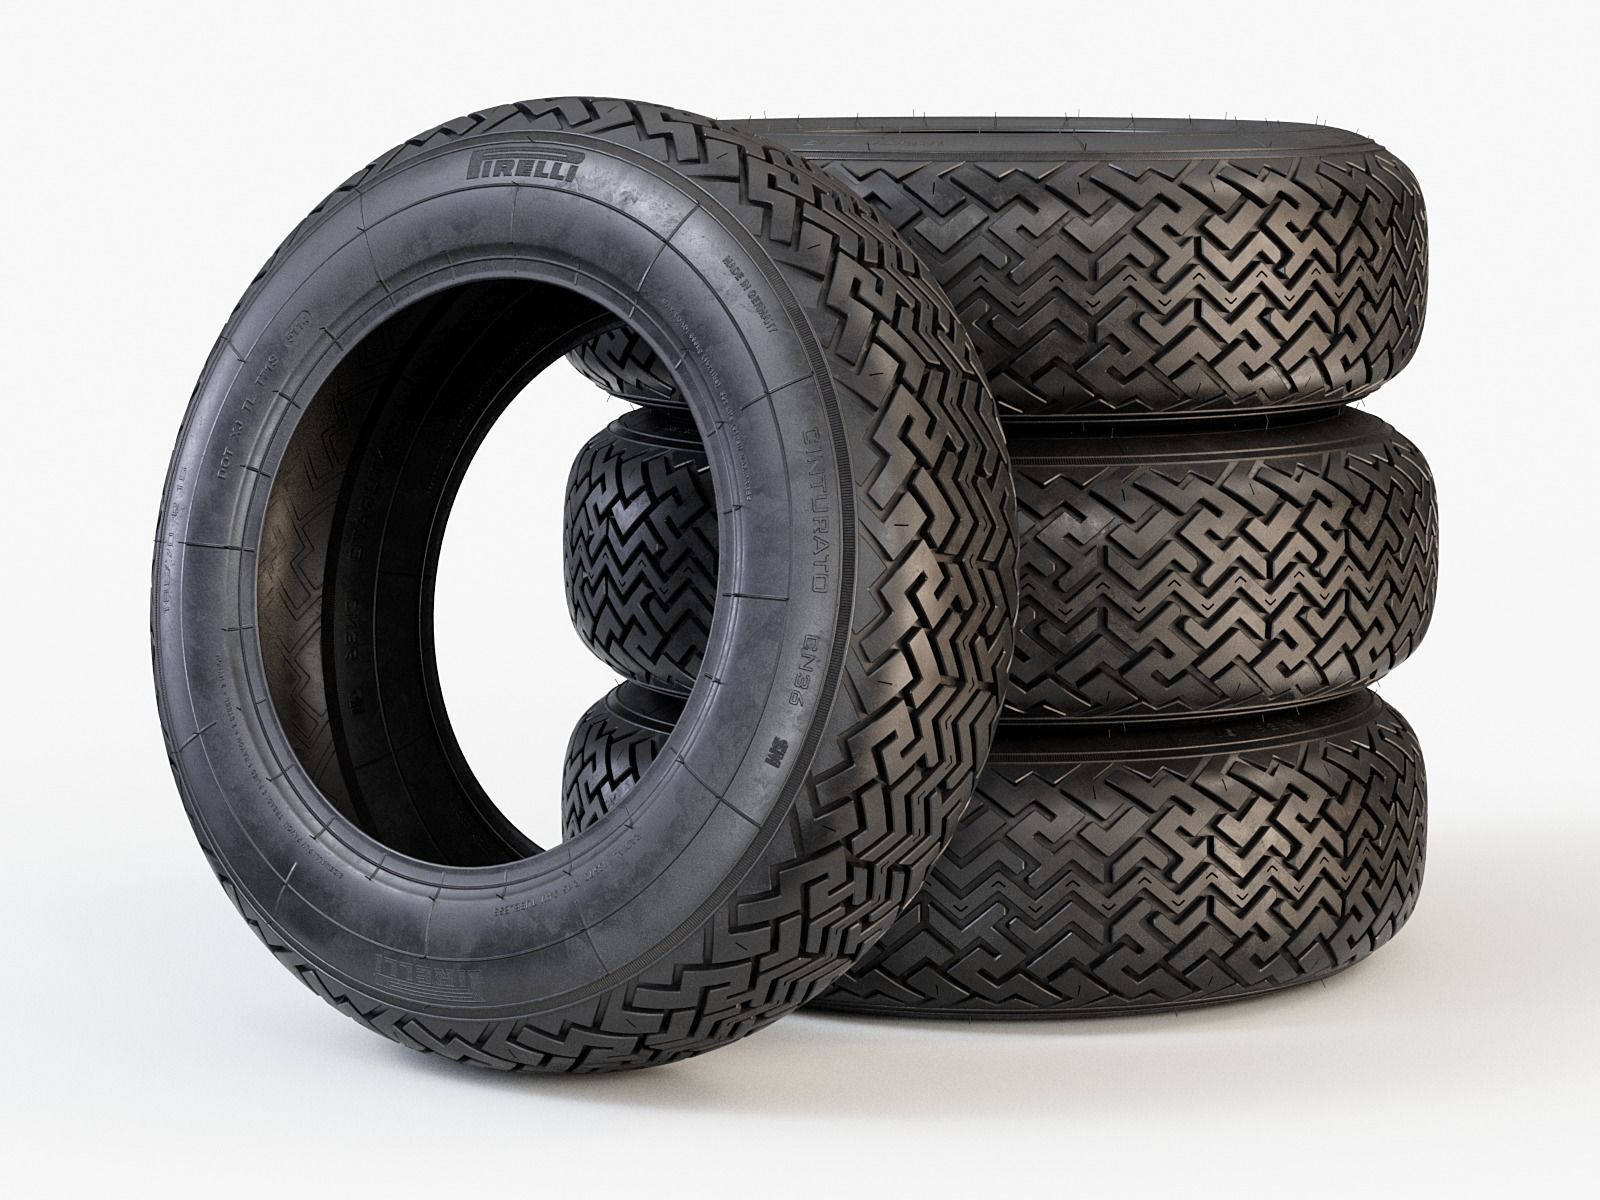 pirelli-cn36-classic-car-tyre-3d-model-max-obj-fbx.jpg